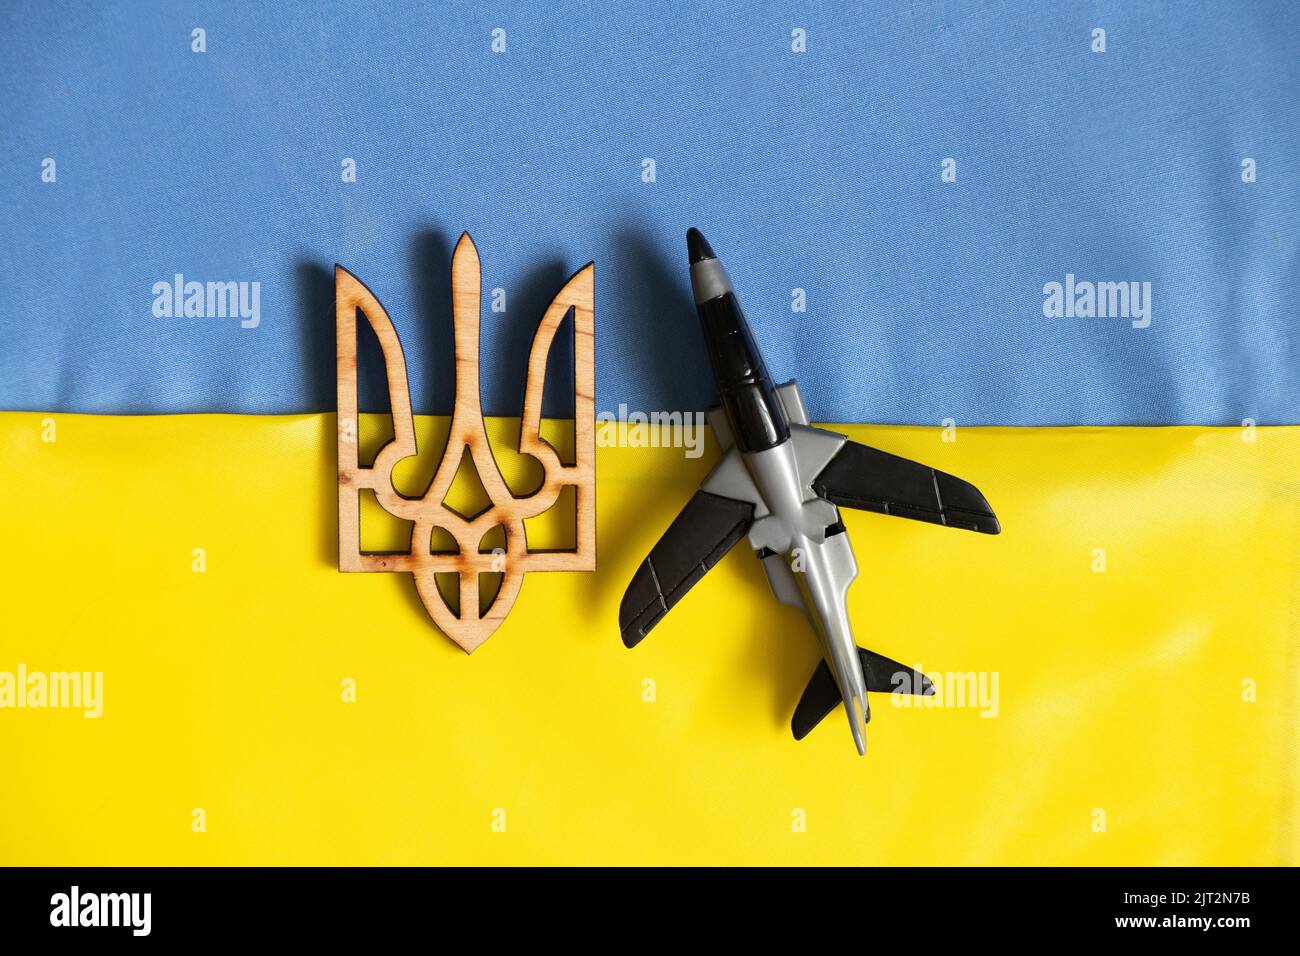 Un aereo giocattolo per bambini giace sulle bandiere nazionali dell'Ucraina e uno stemma di legno, la guerra in Ucraina, un cielo chiuso Foto Stock